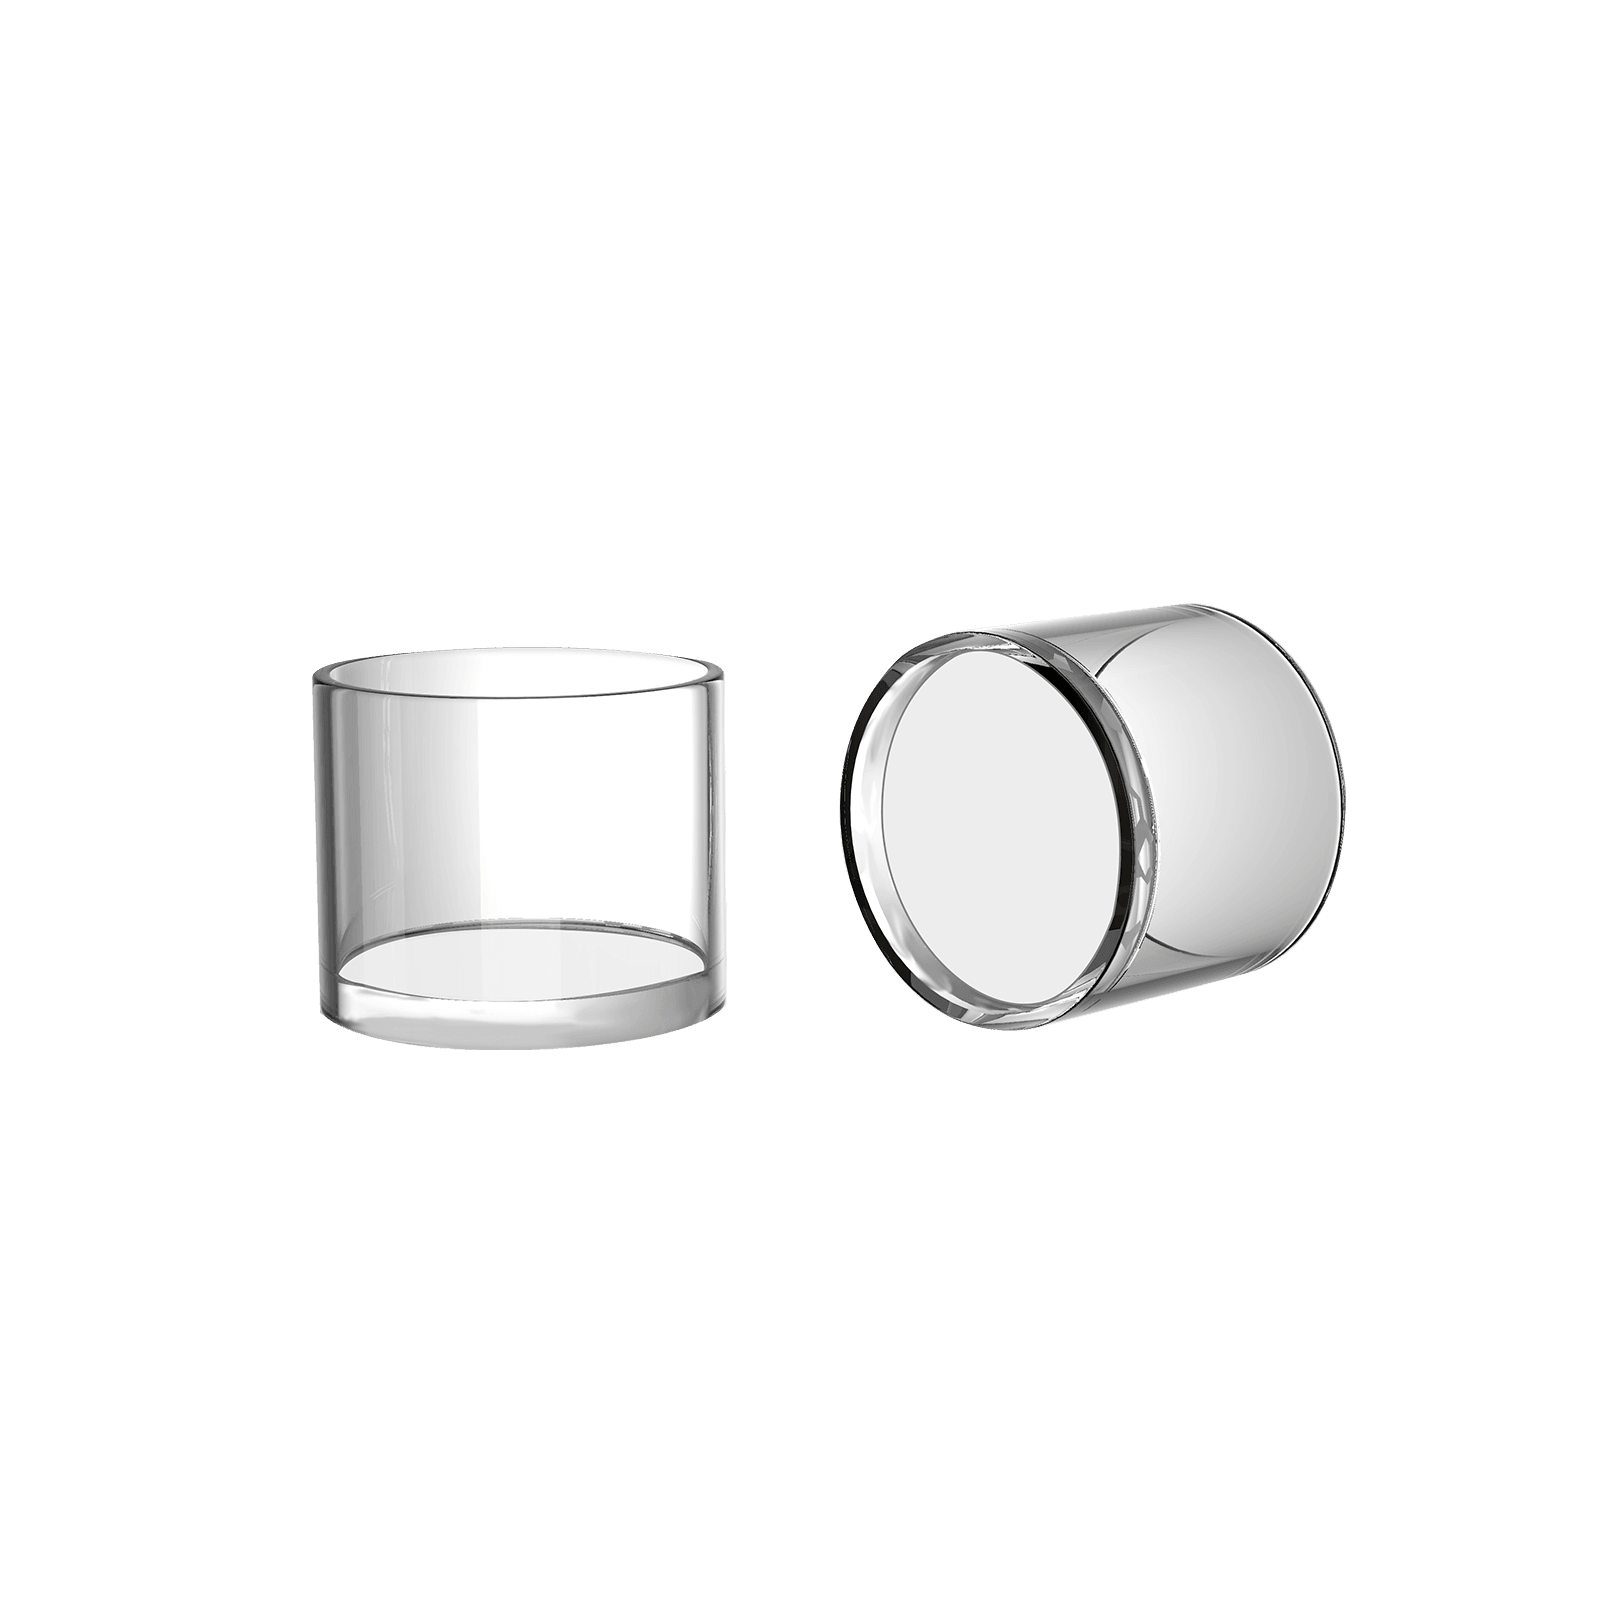 TOBOR Quartz Bowl accessories - iVapebest